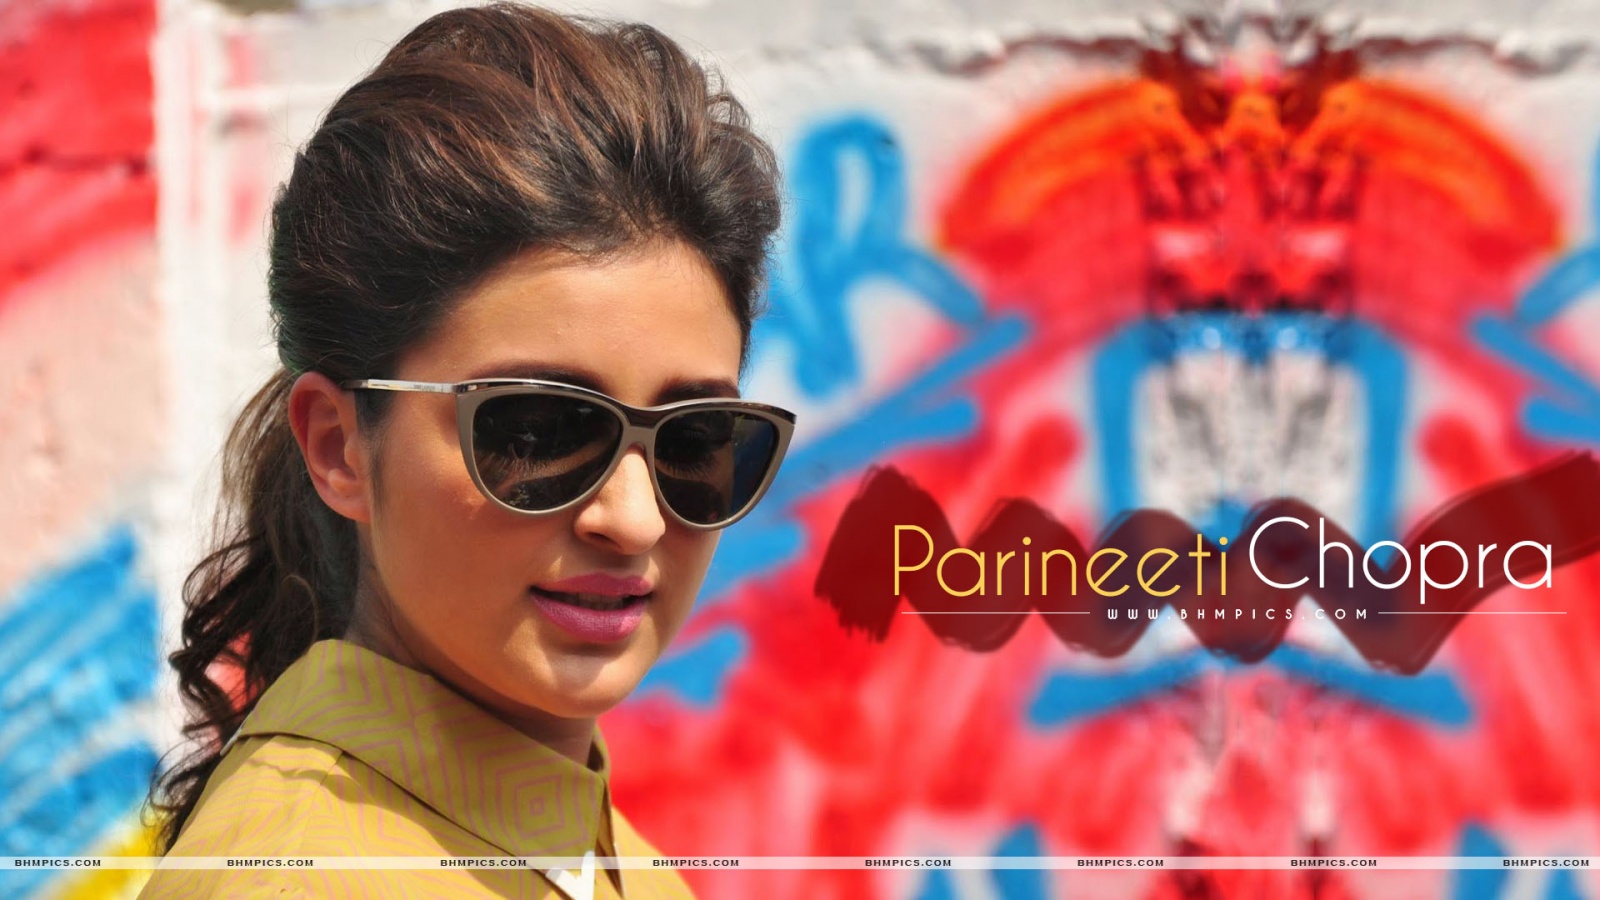 Parineeti Chopra Wearing Sunglasses